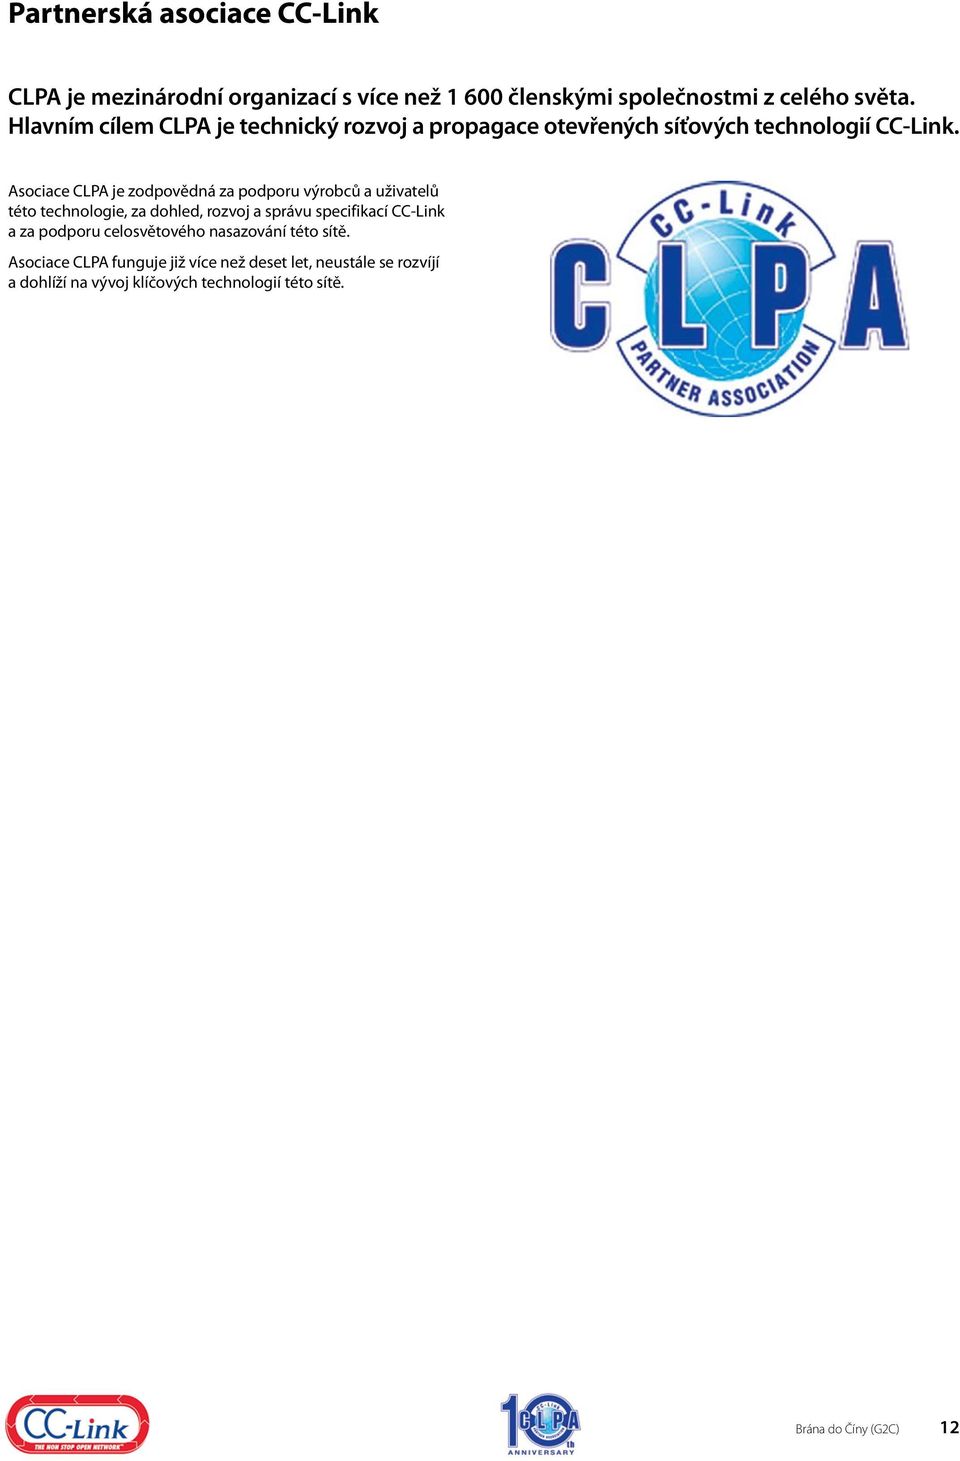 Asociace CLPA je zodpovědná za podporu výrobců a uživatelů této technologie, za dohled, rozvoj a správu specifikací CC-Link a za